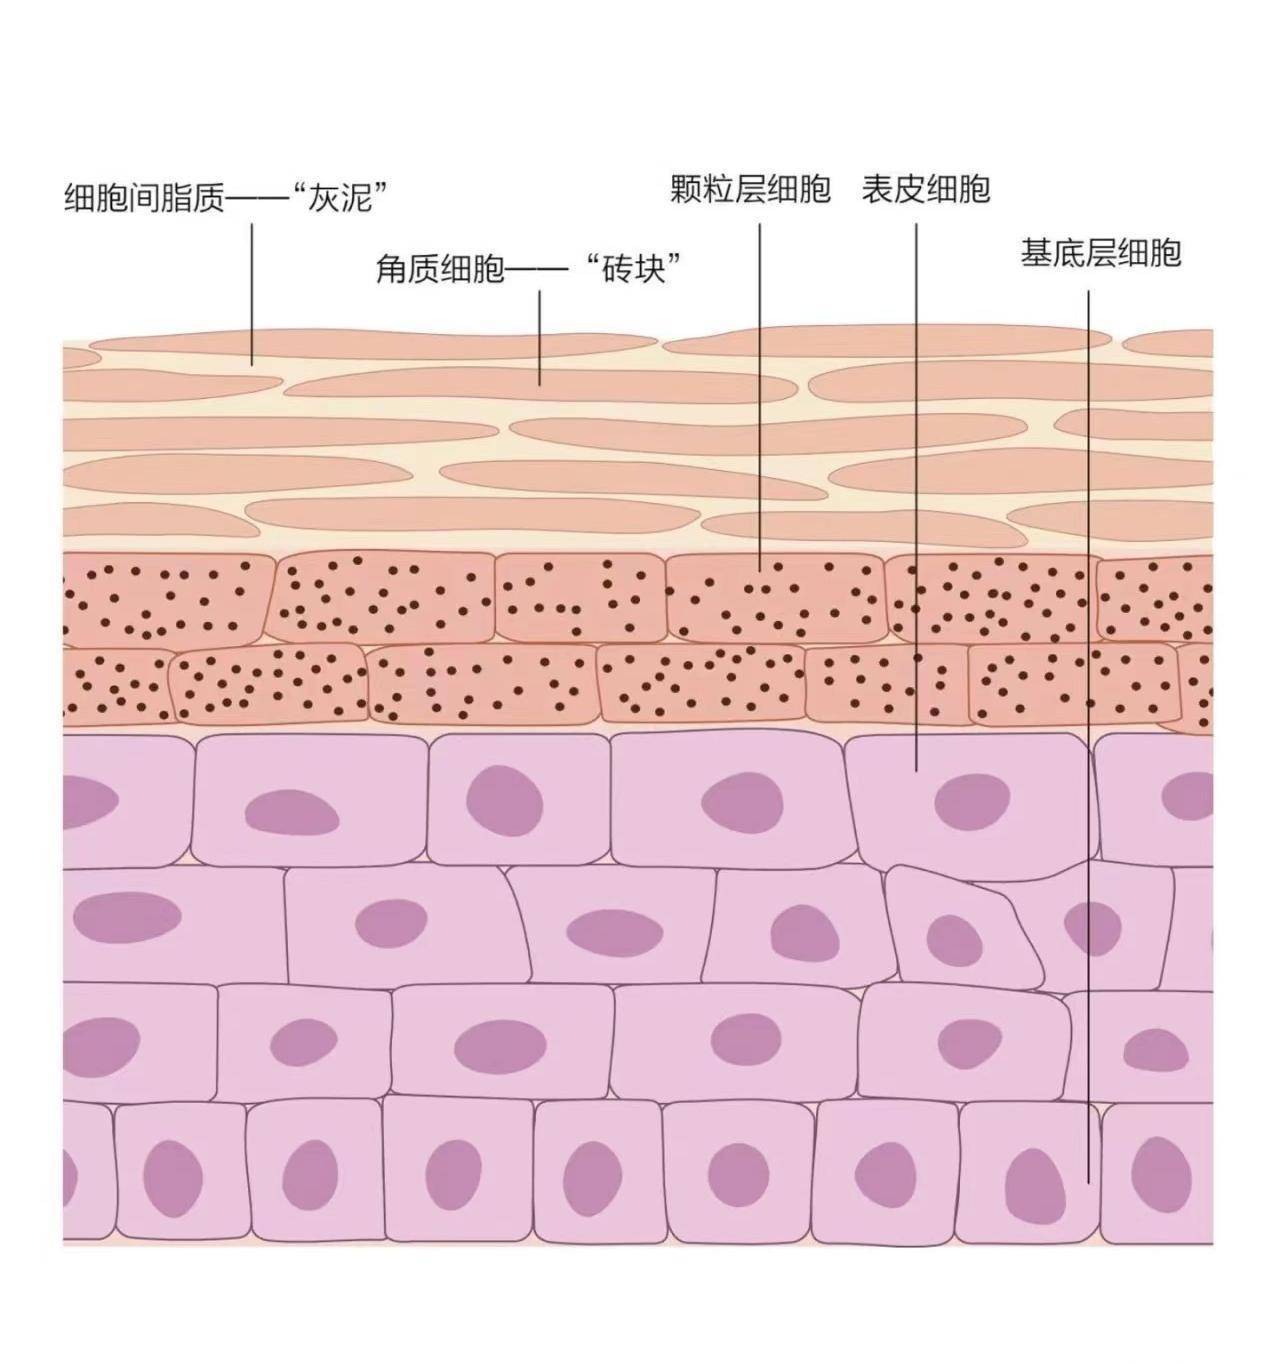 砖墙结构,它表面还有一层由汗液及皮脂组成的皮脂膜,共同构成了皮肤